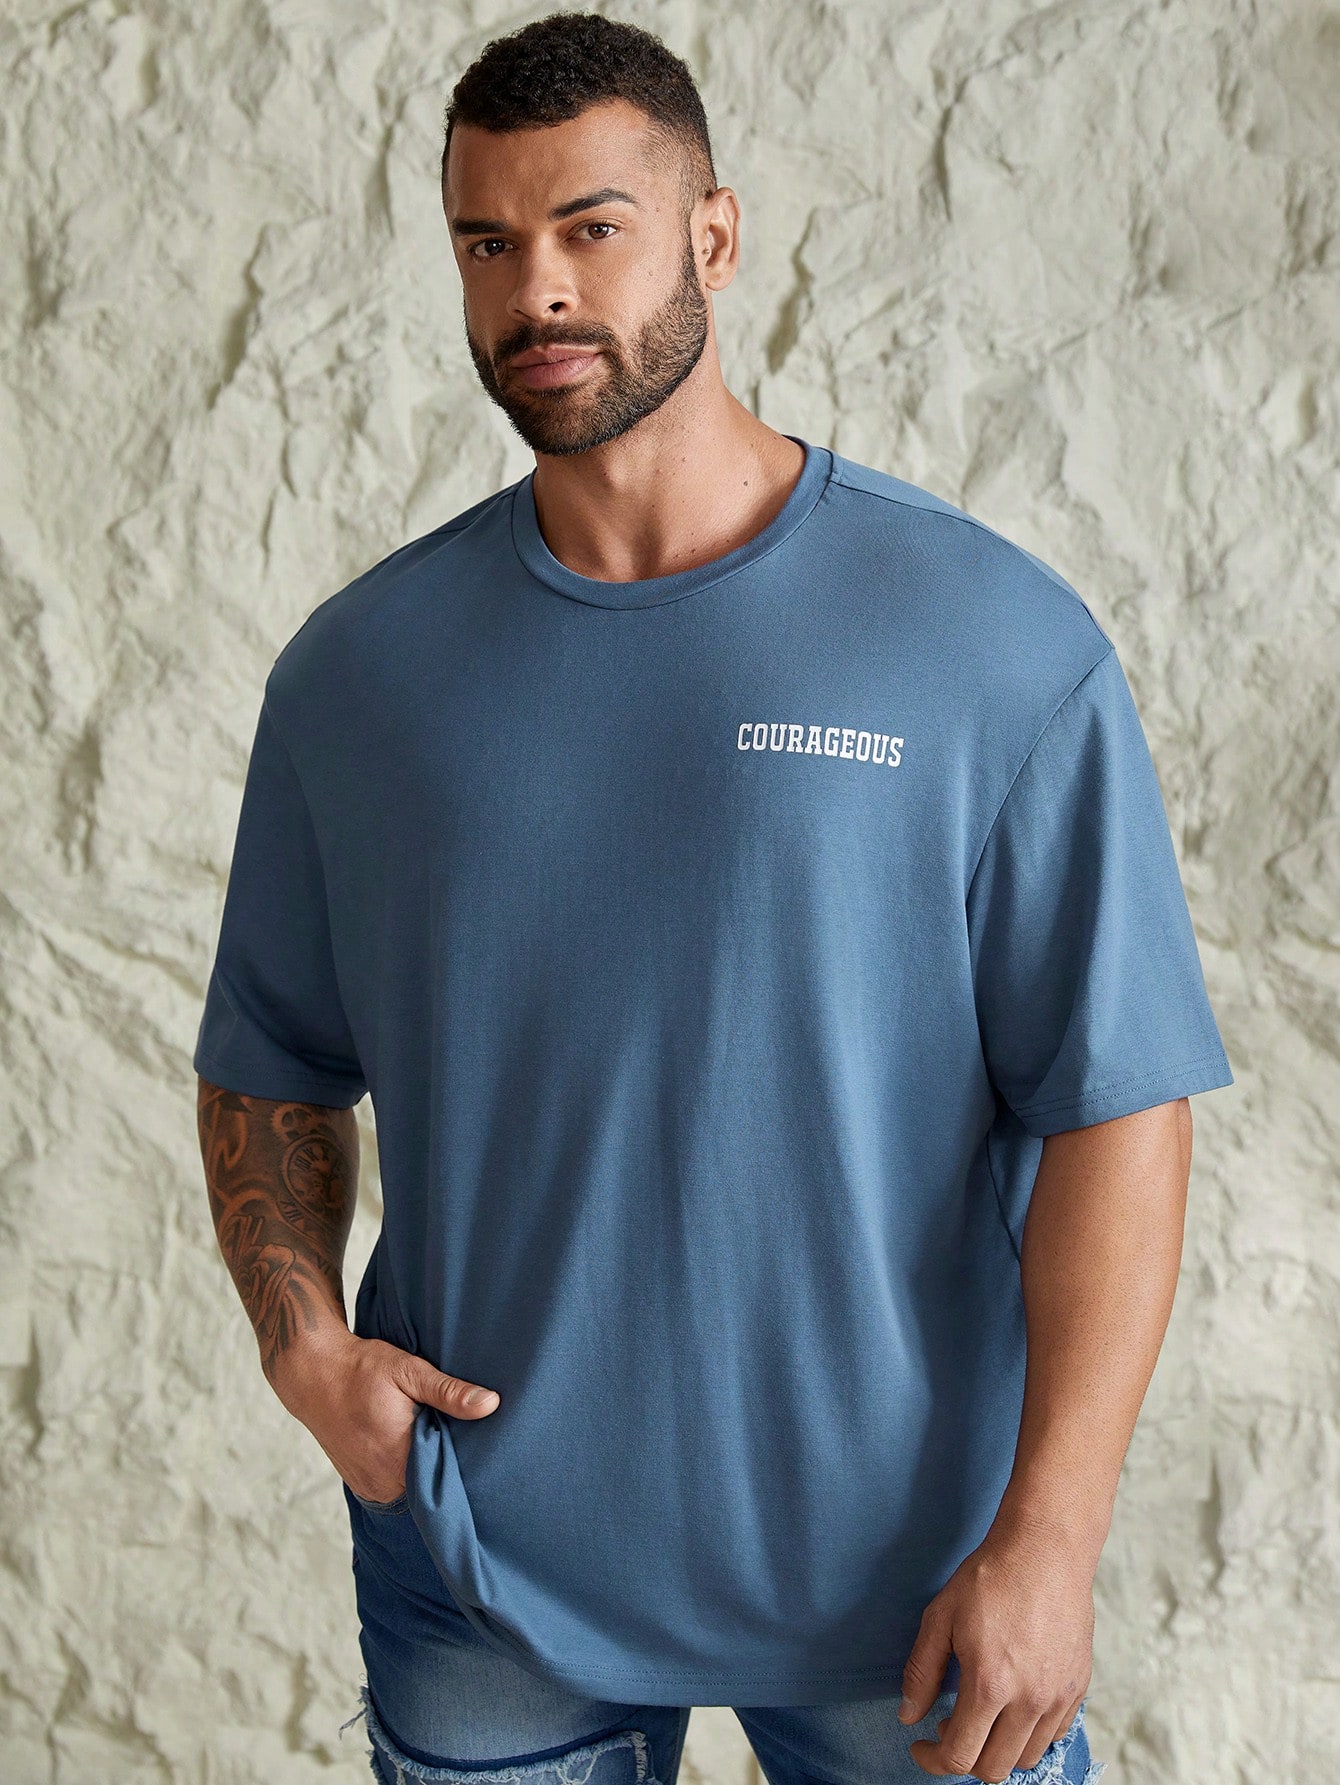 Мужская повседневная футболка с коротким рукавом Manfinity Hypemode больших размеров с принтом слогана, синий